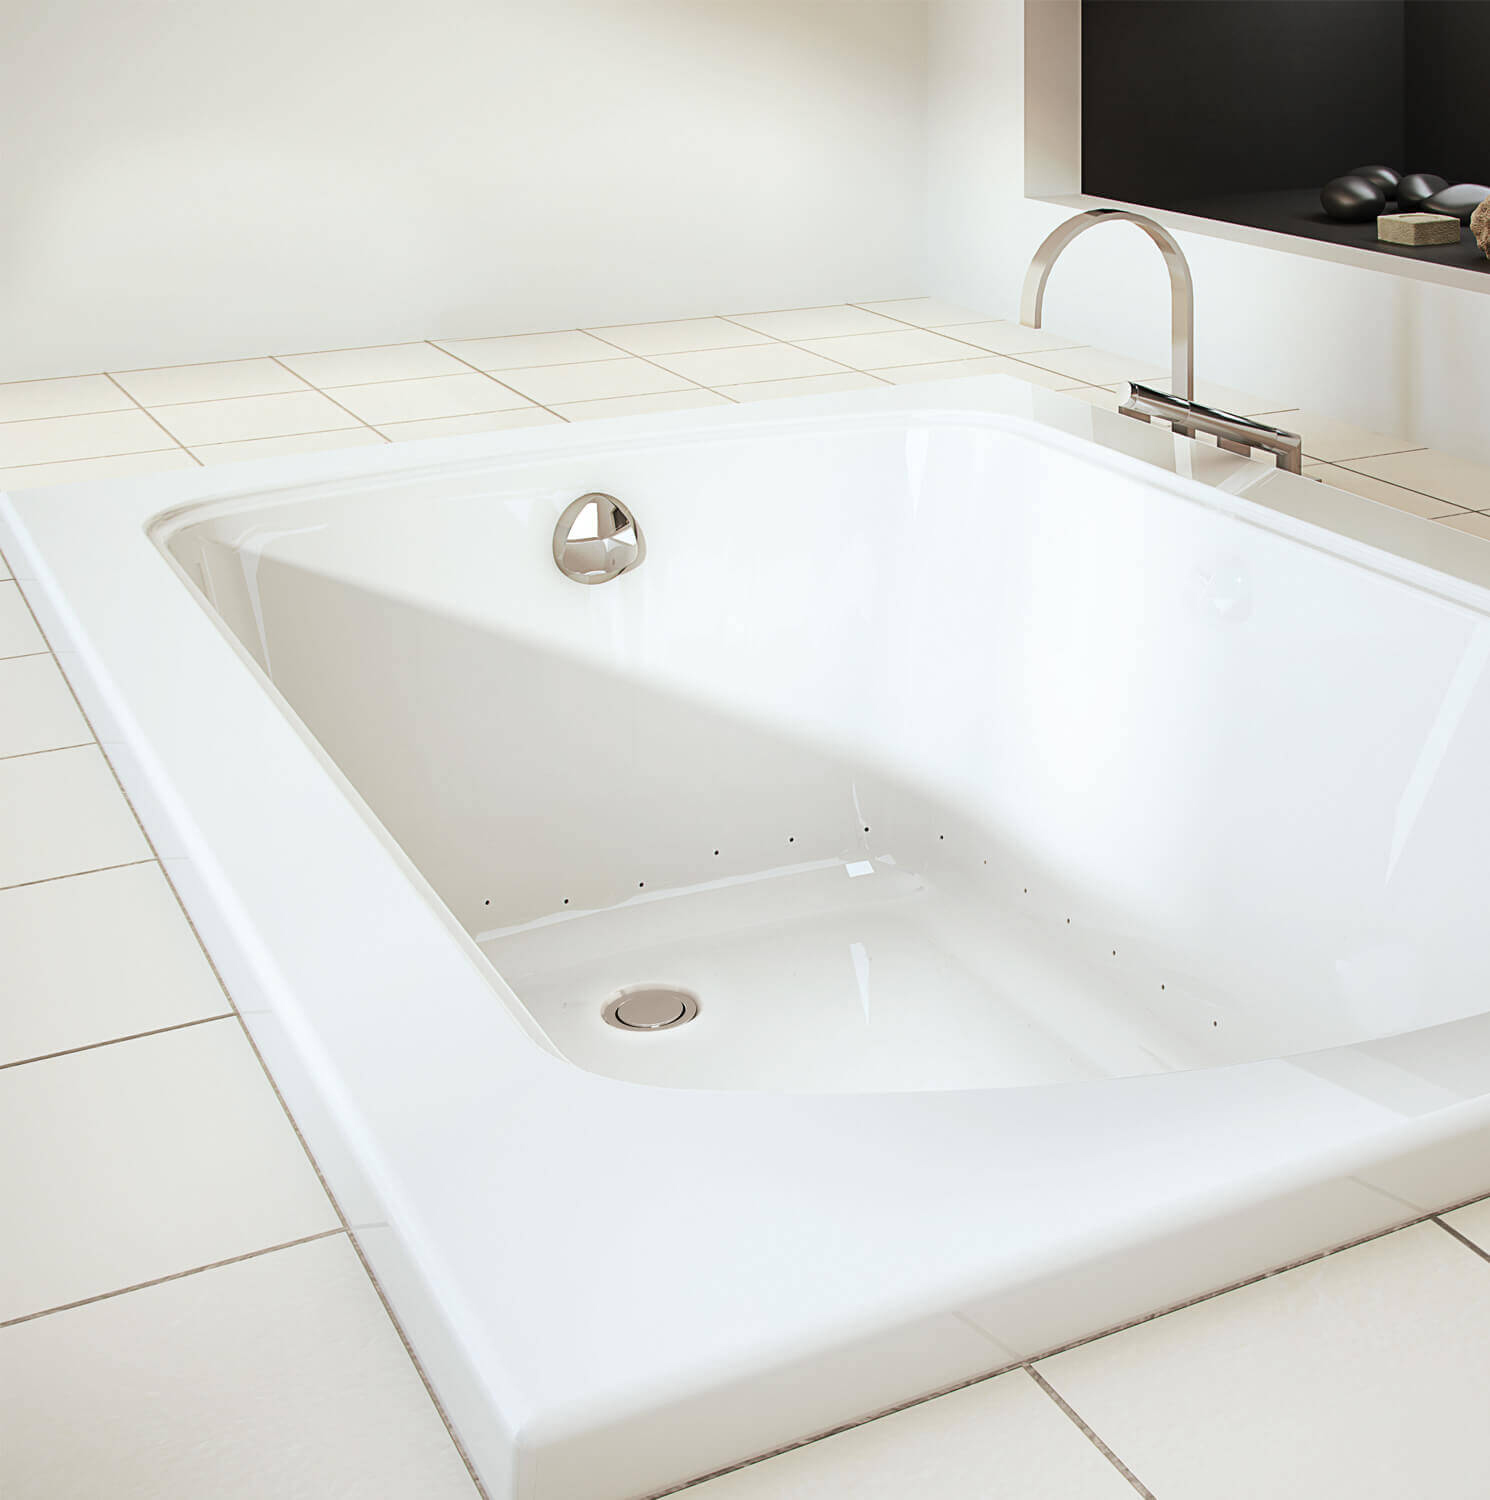 Bainultra Meridian® 6042 alcove drop-in air jet bathtub for your modern bathroom